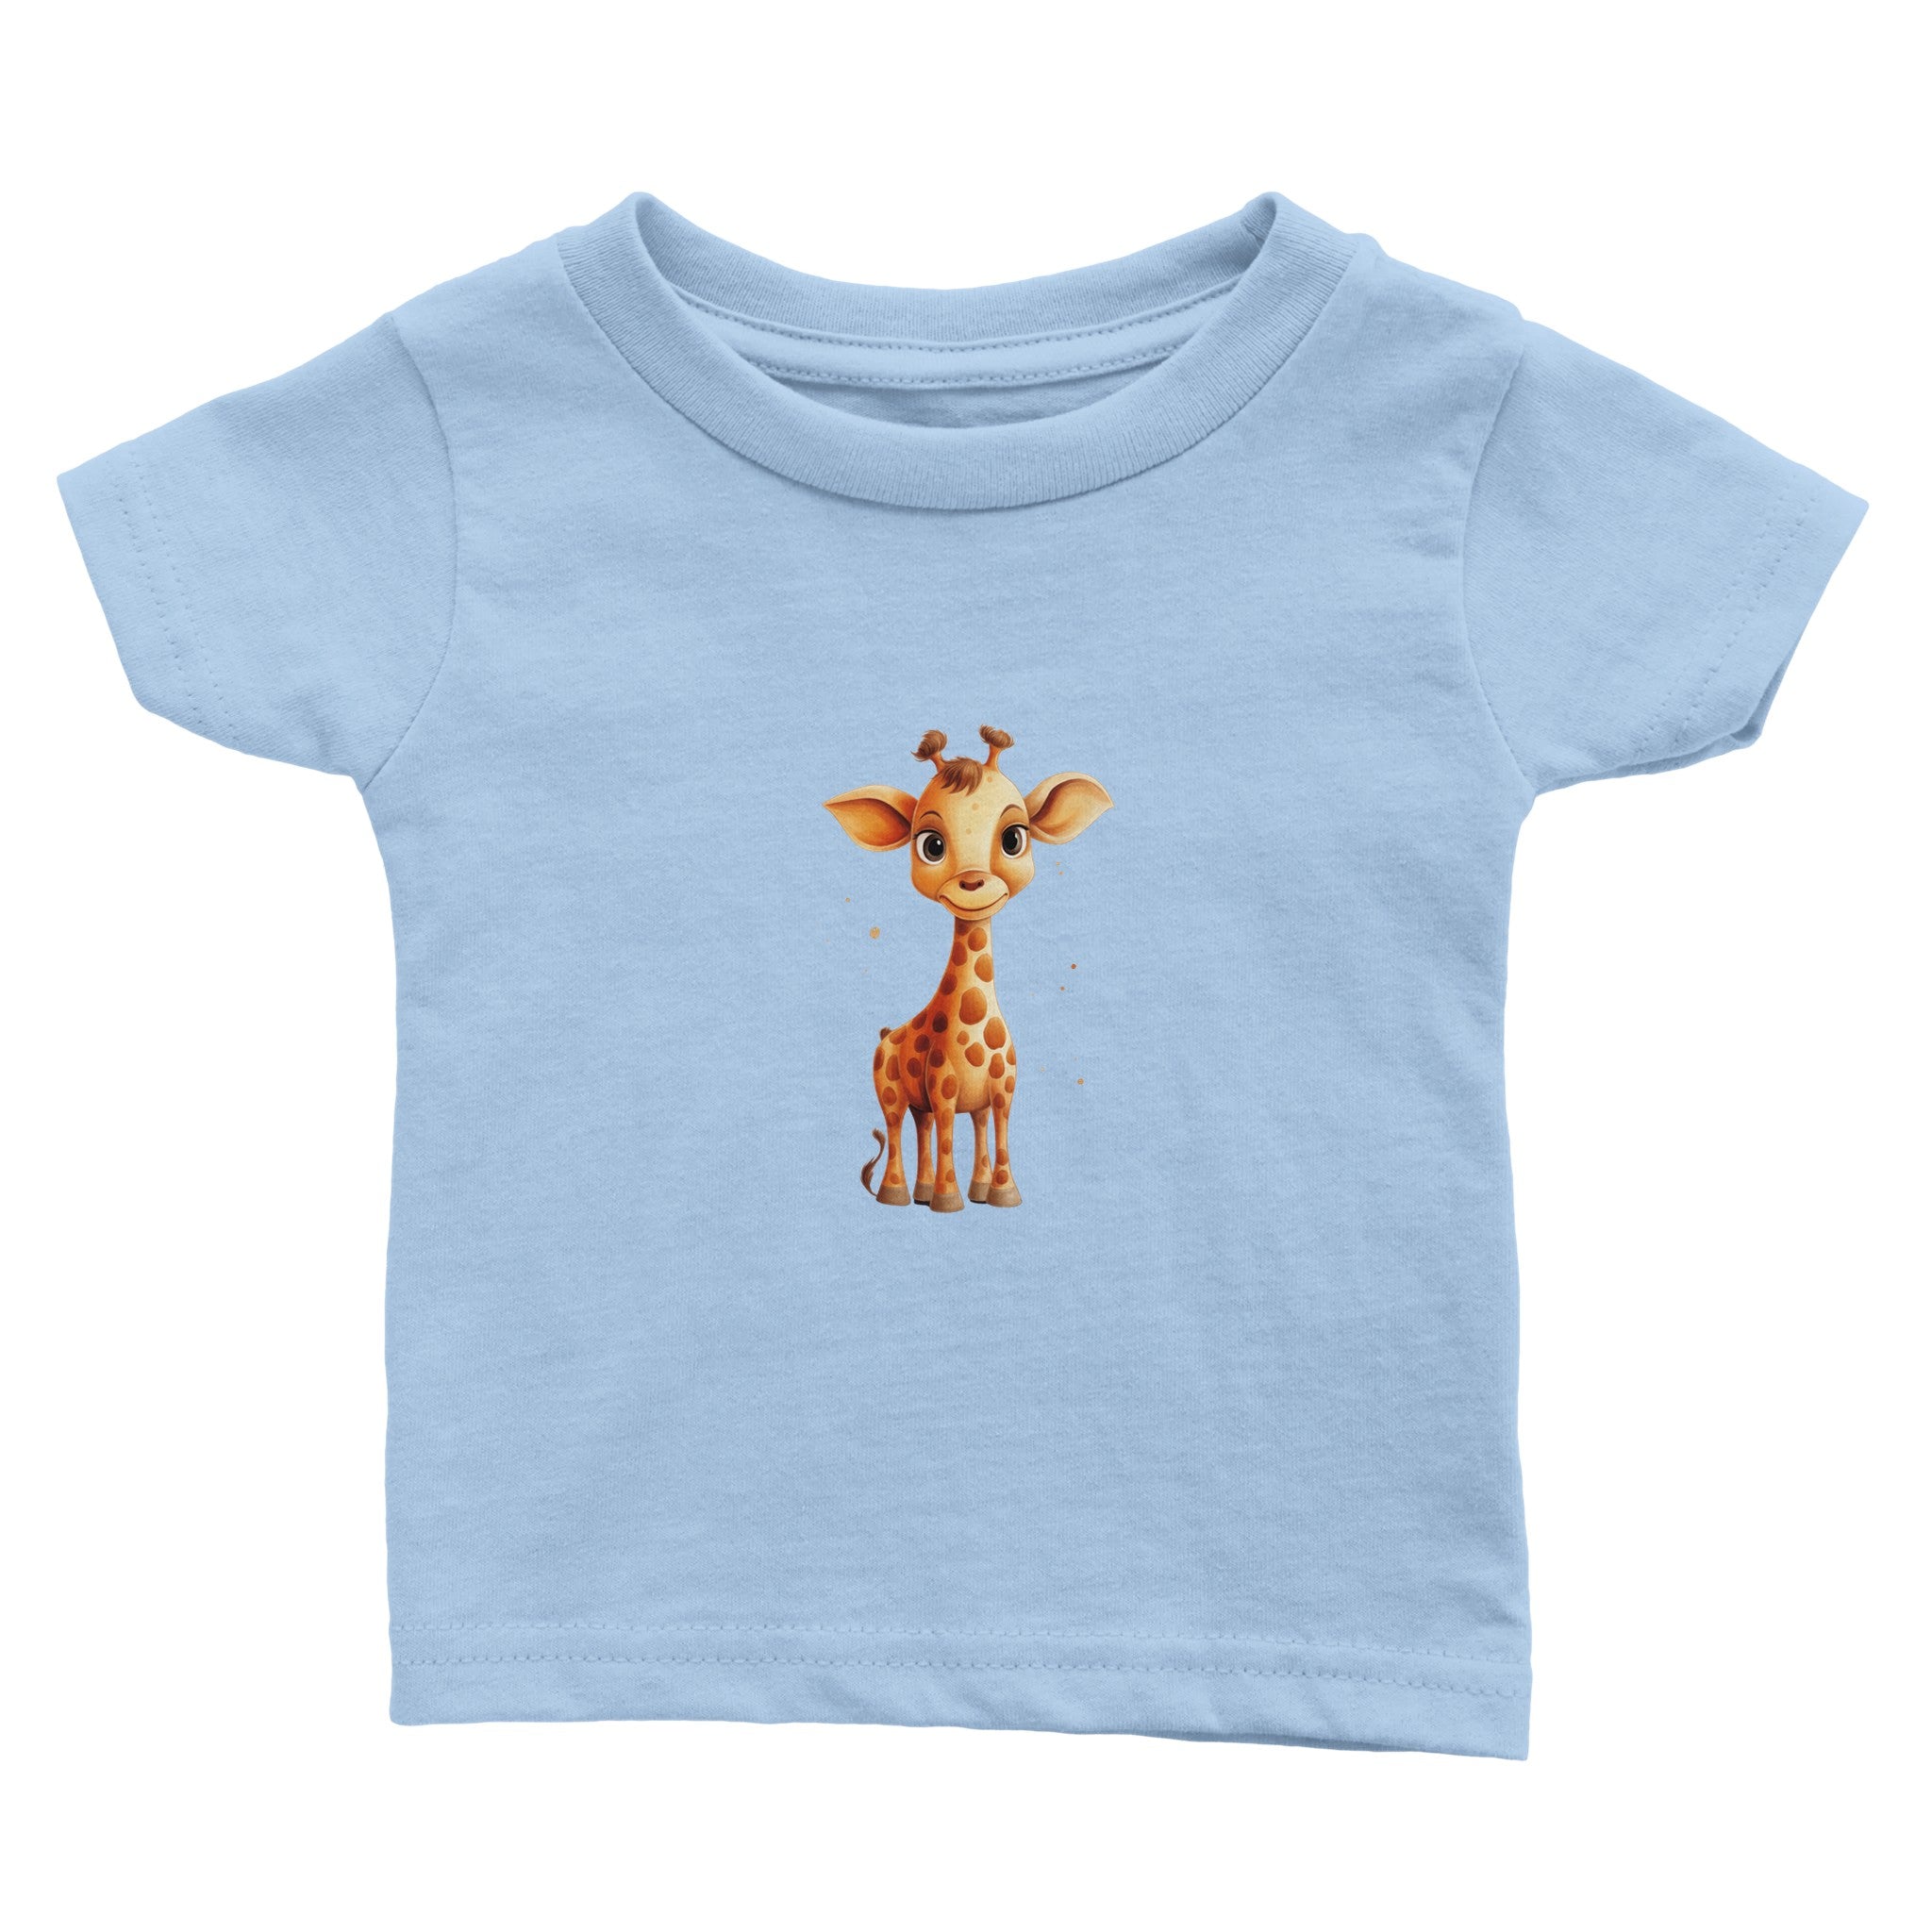 Gentle Eyed Giraffelet Baby Crewneck T-shirt - Optimalprint